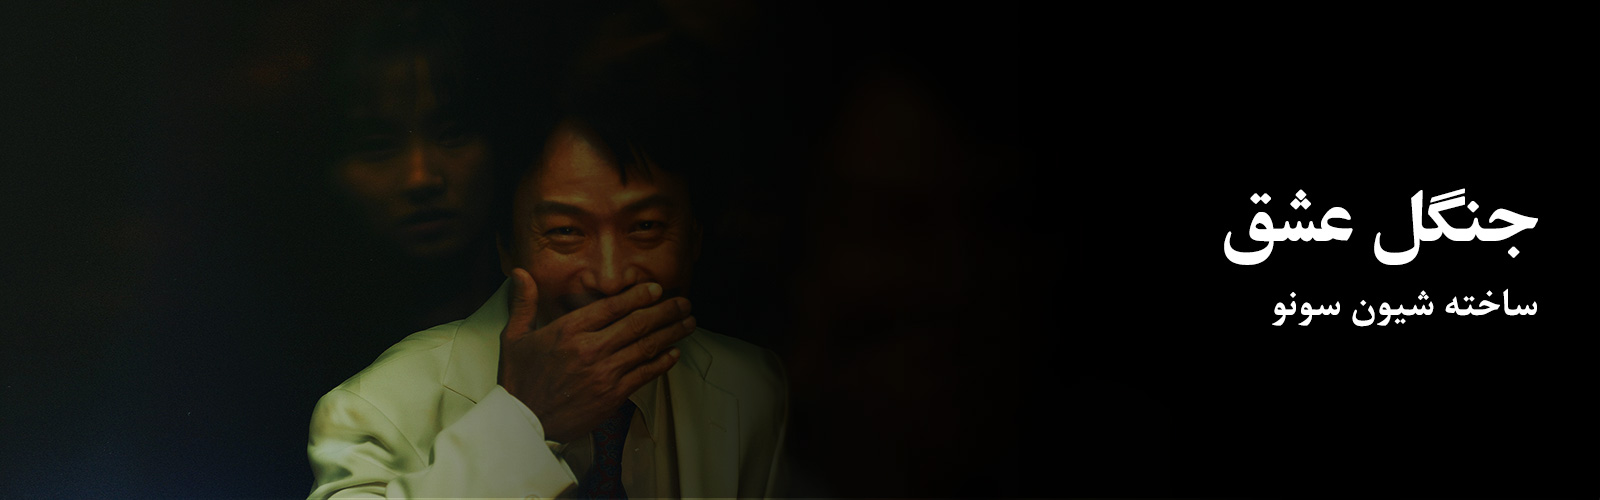 فیلم‌پَن: جنگل عشق؛ ساخته شیون سونو